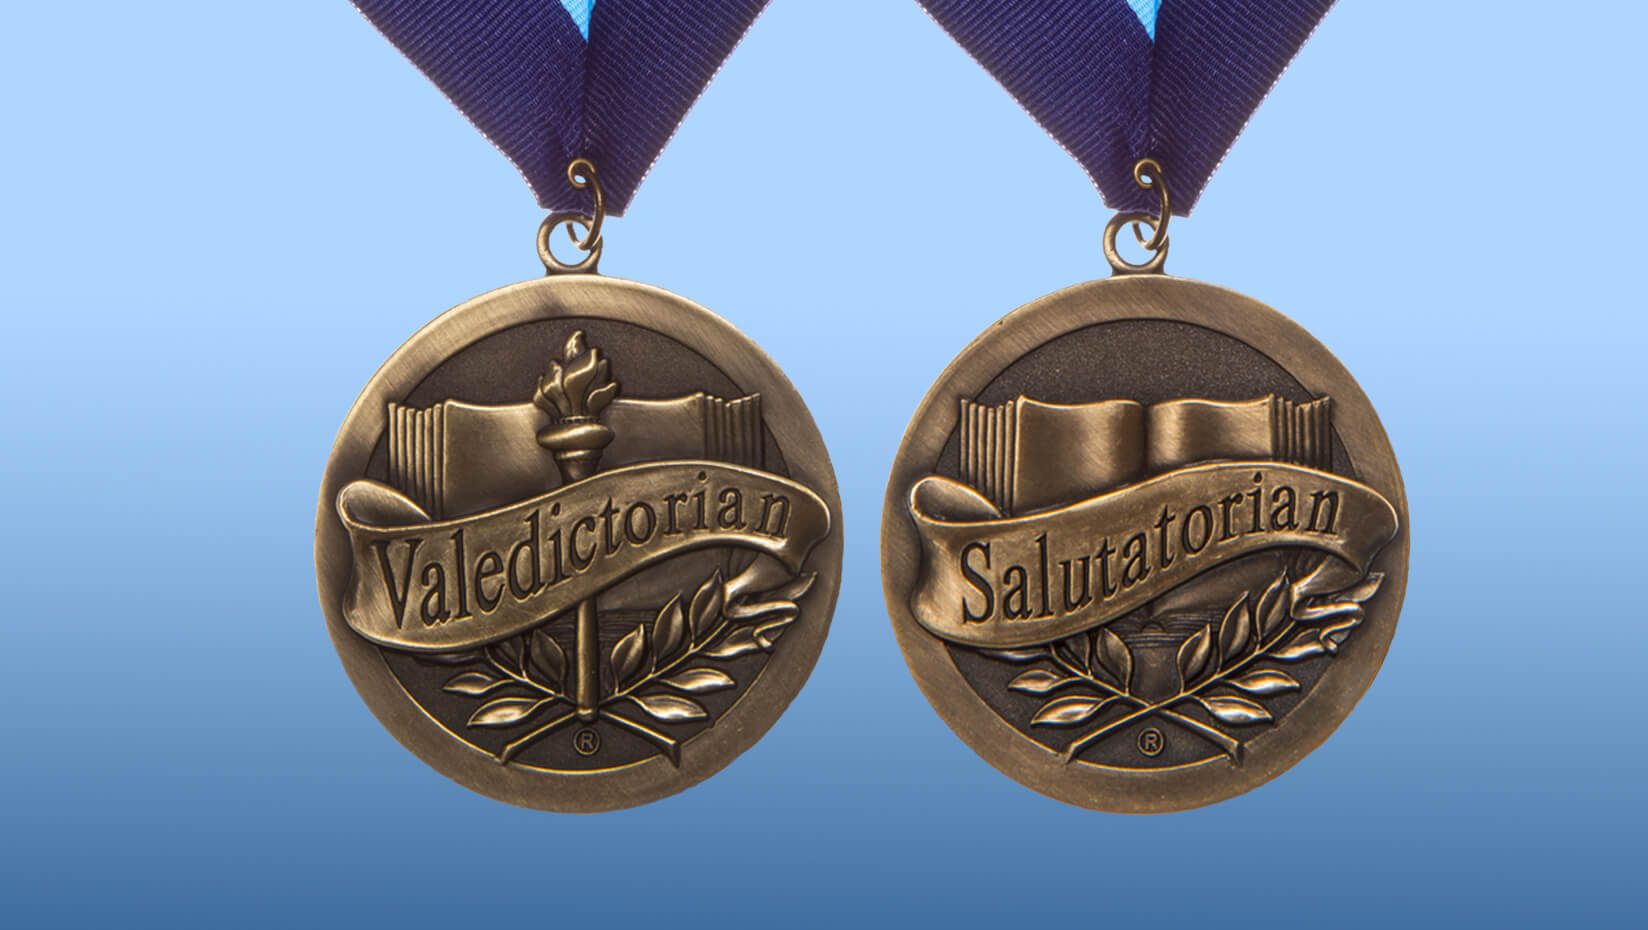 UMaine's valedictorian and salutatorian medals